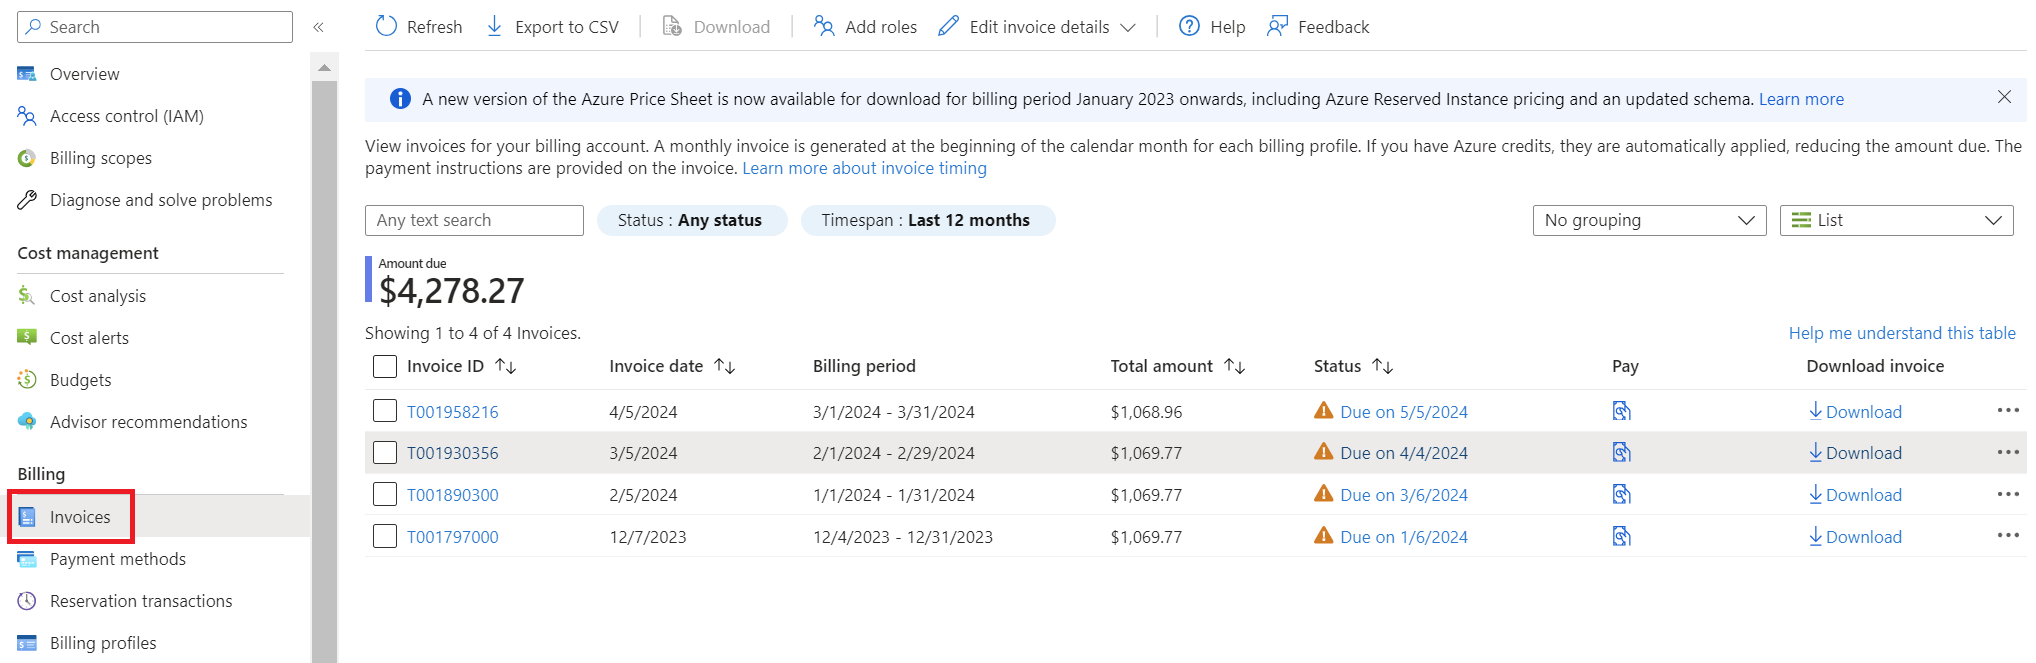 Captura de pantalla que muestra la página facturas de una cuenta de facturación de M C A.